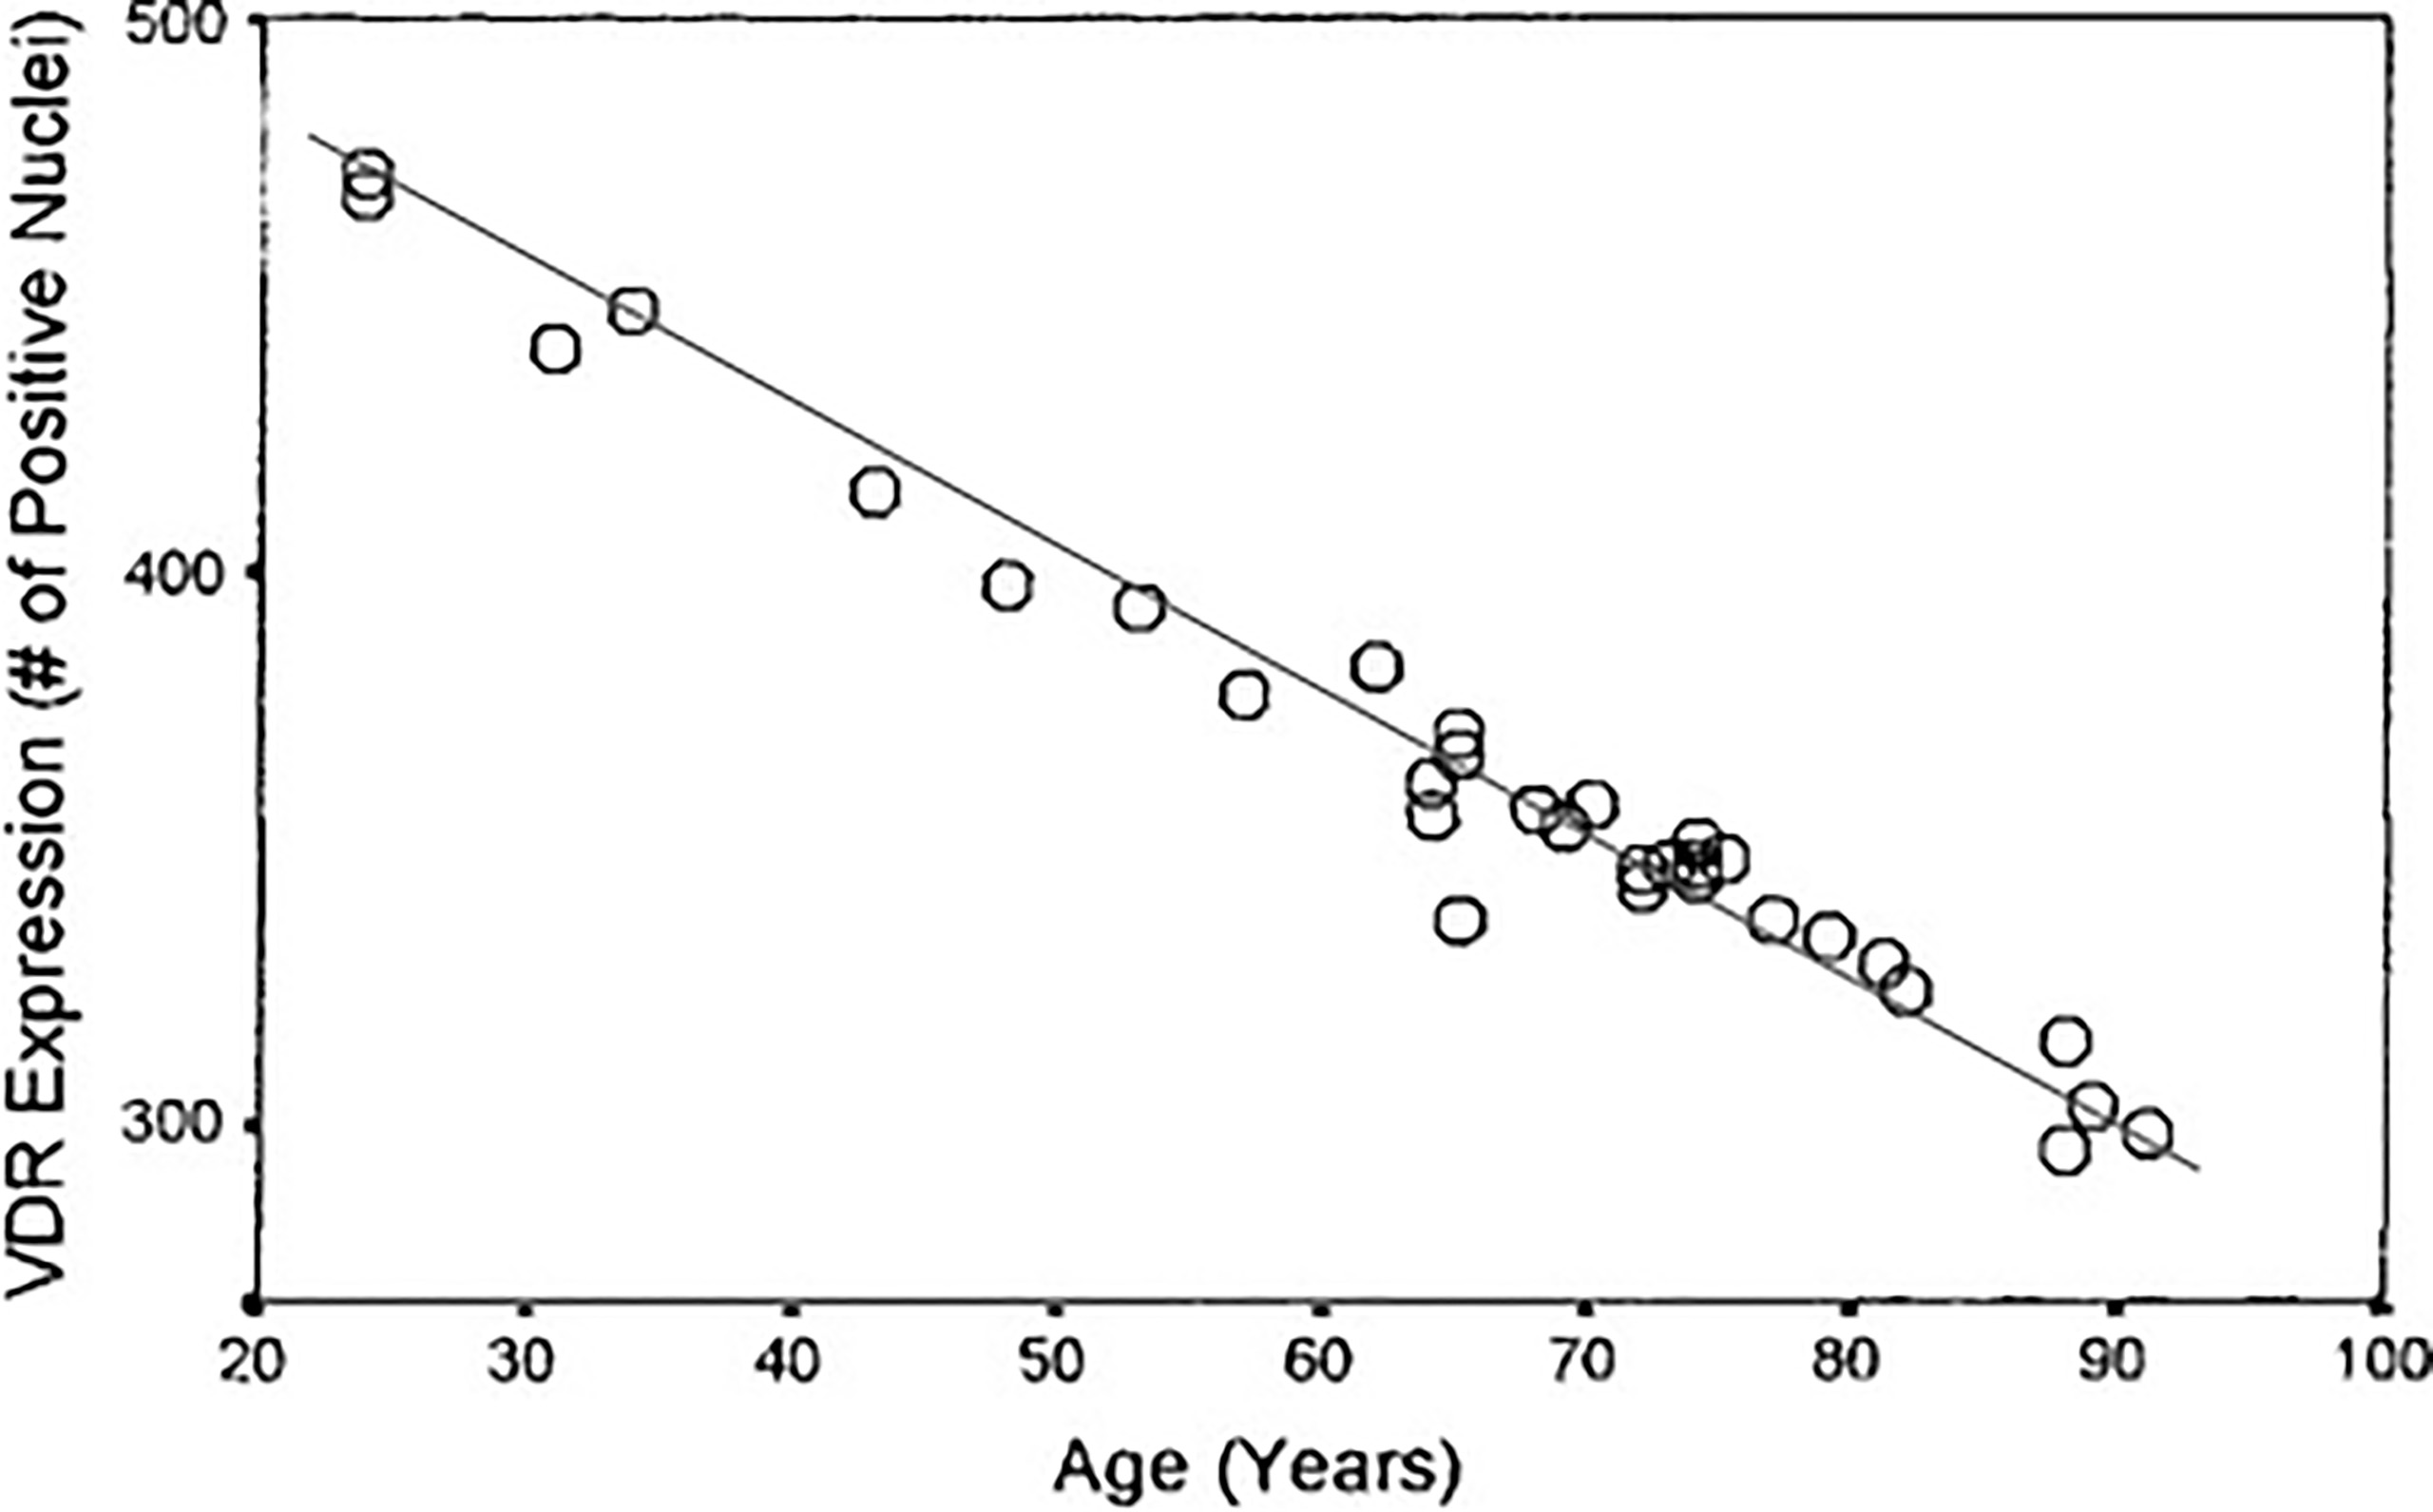 déclin des récepteurs à la vitamine D avec le vieillissement